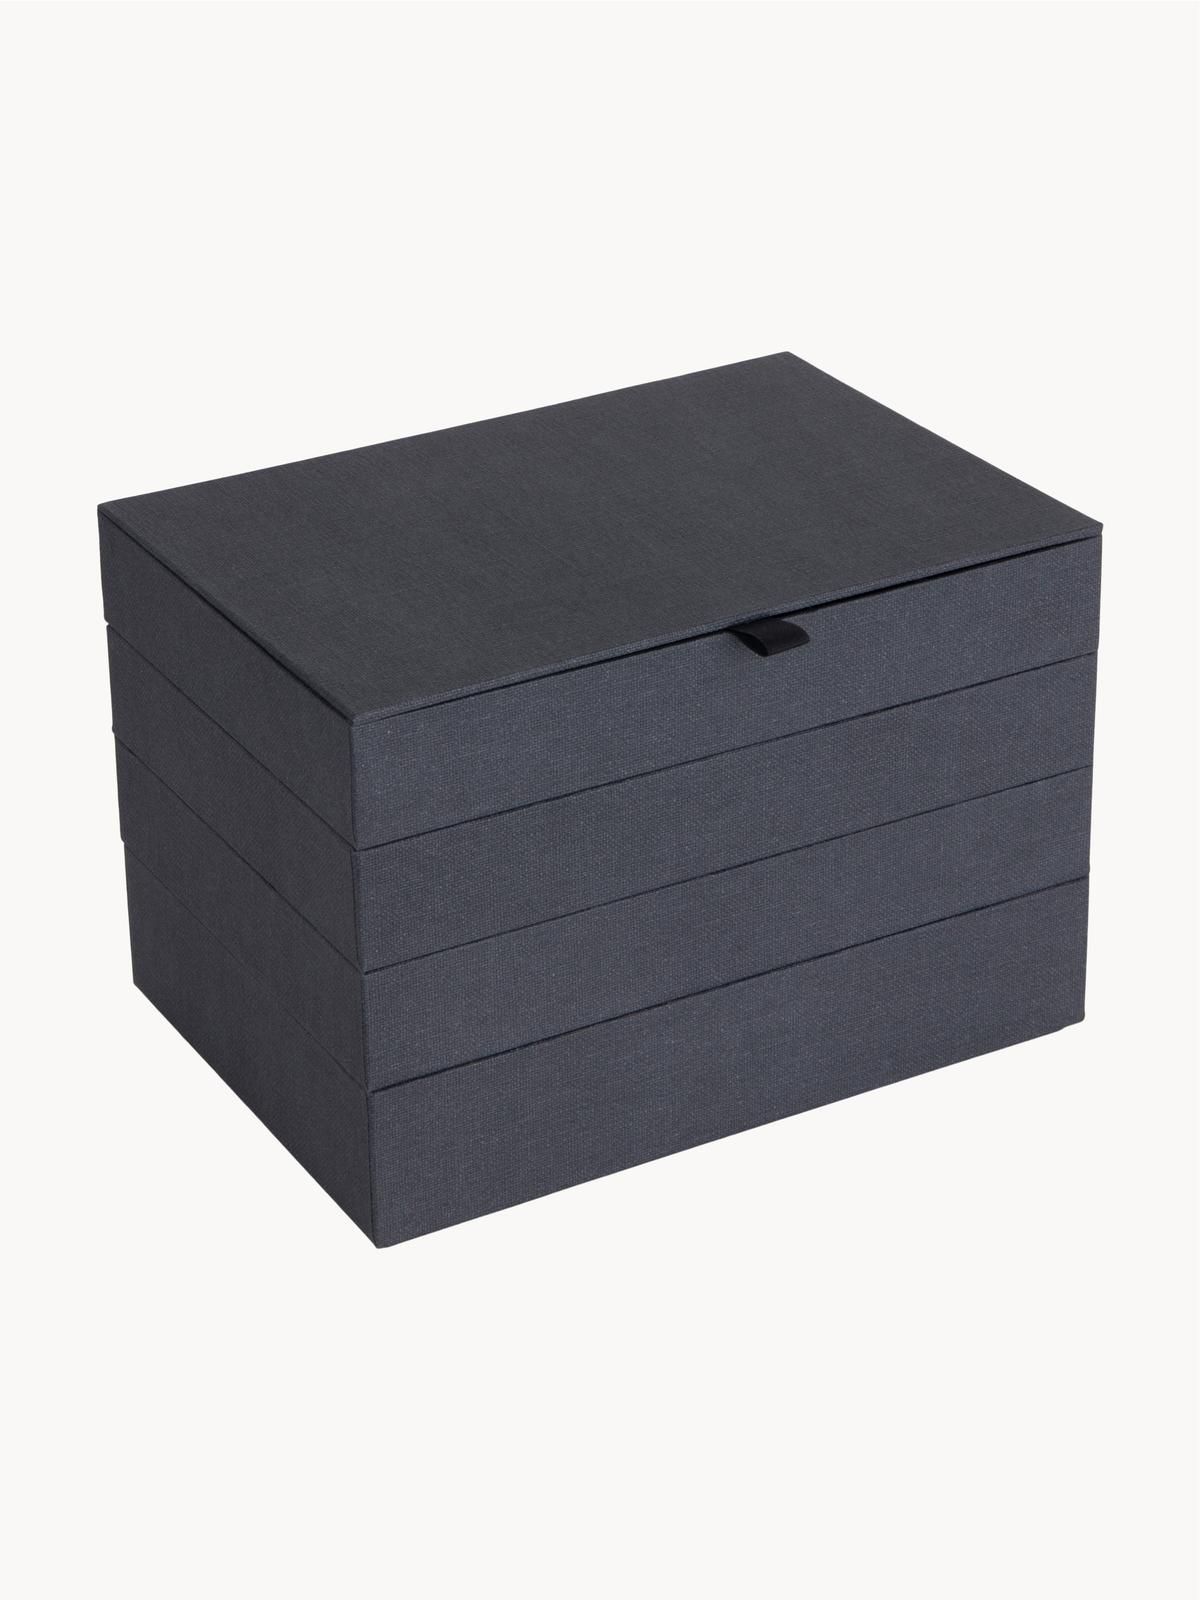 Schmuckbox Precious mit Magnet-Verschluss von Bigso Box of Sweden